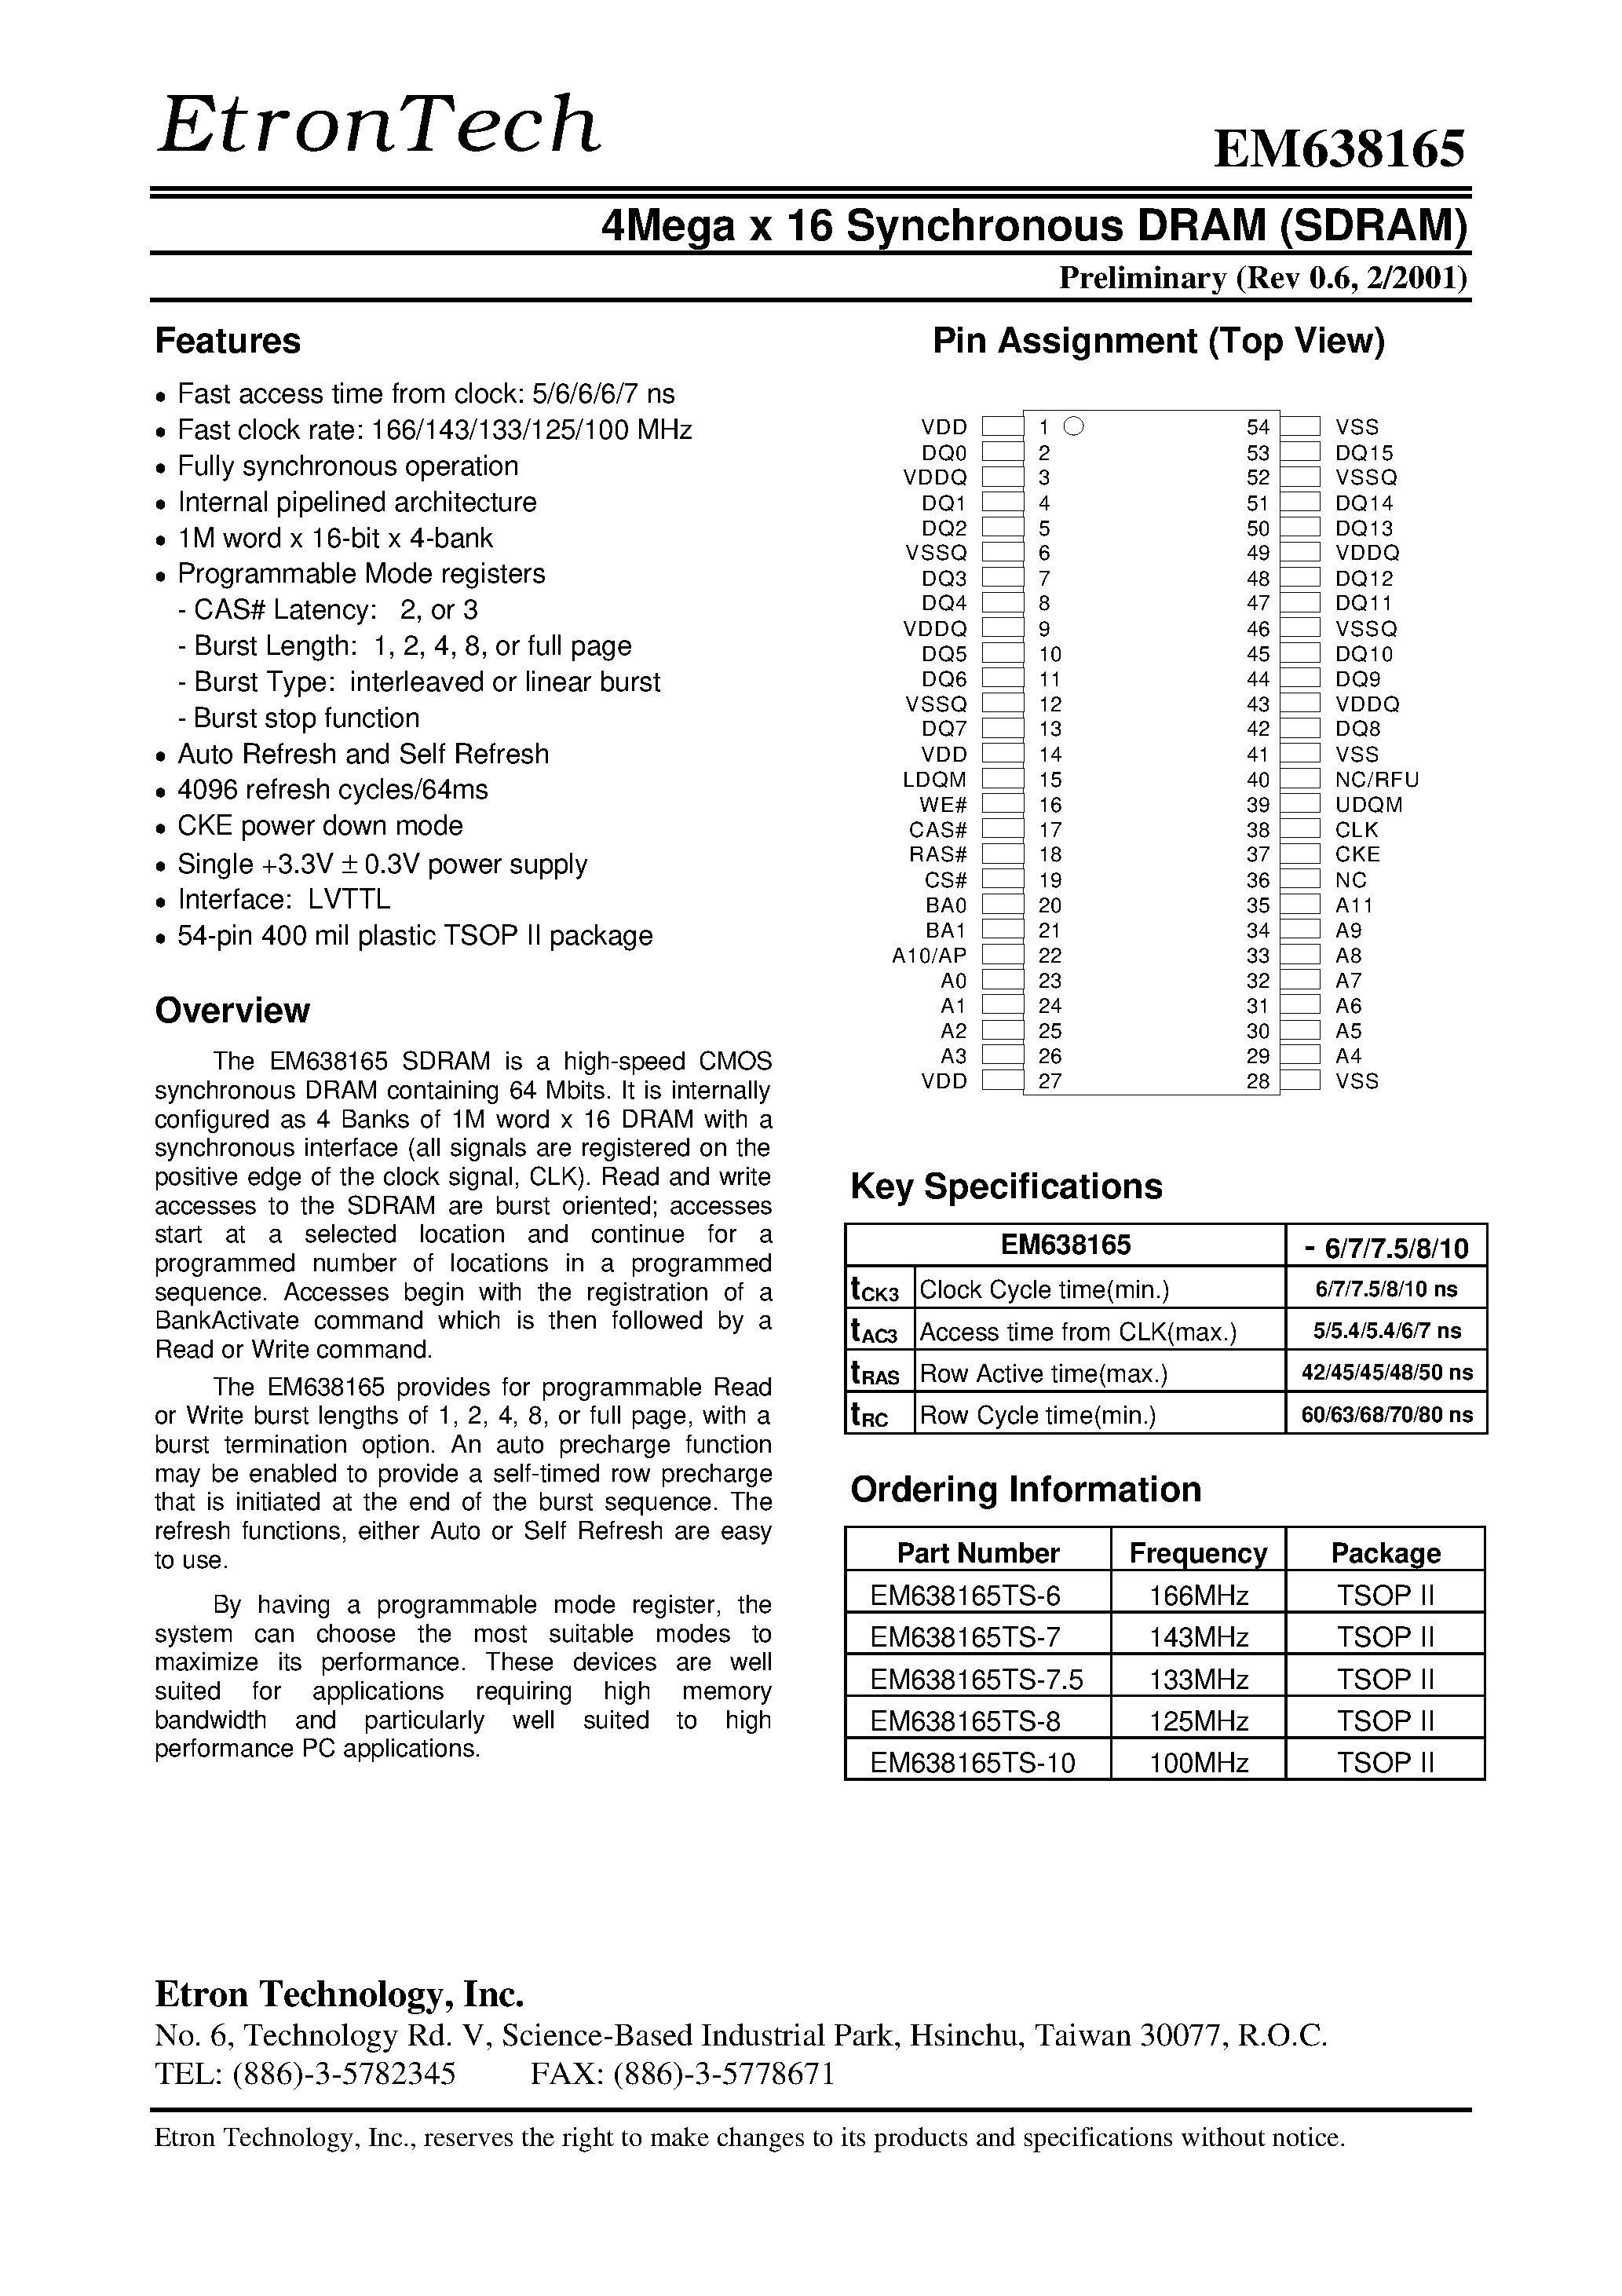 Даташит EM638165TS-6 - 4Mega x 16 Synchronous DRAM (SDRAM) страница 1